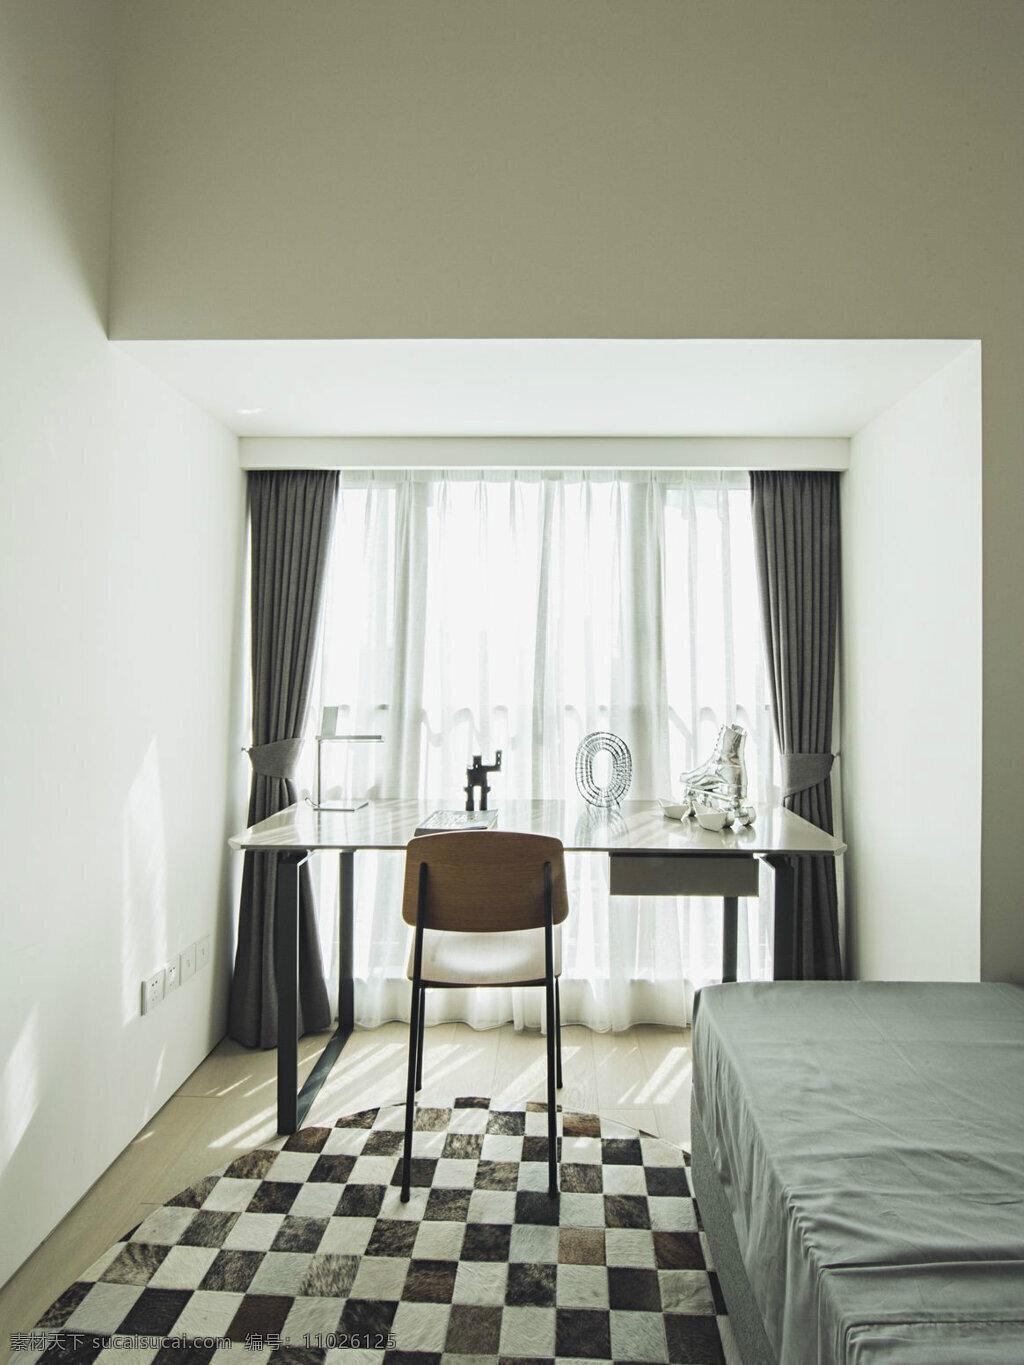 现代 时尚 黑白 格 地毯 卧室 室内装修 效果图 卧室装修 黑白格地毯 灰色床品 深灰色窗帘